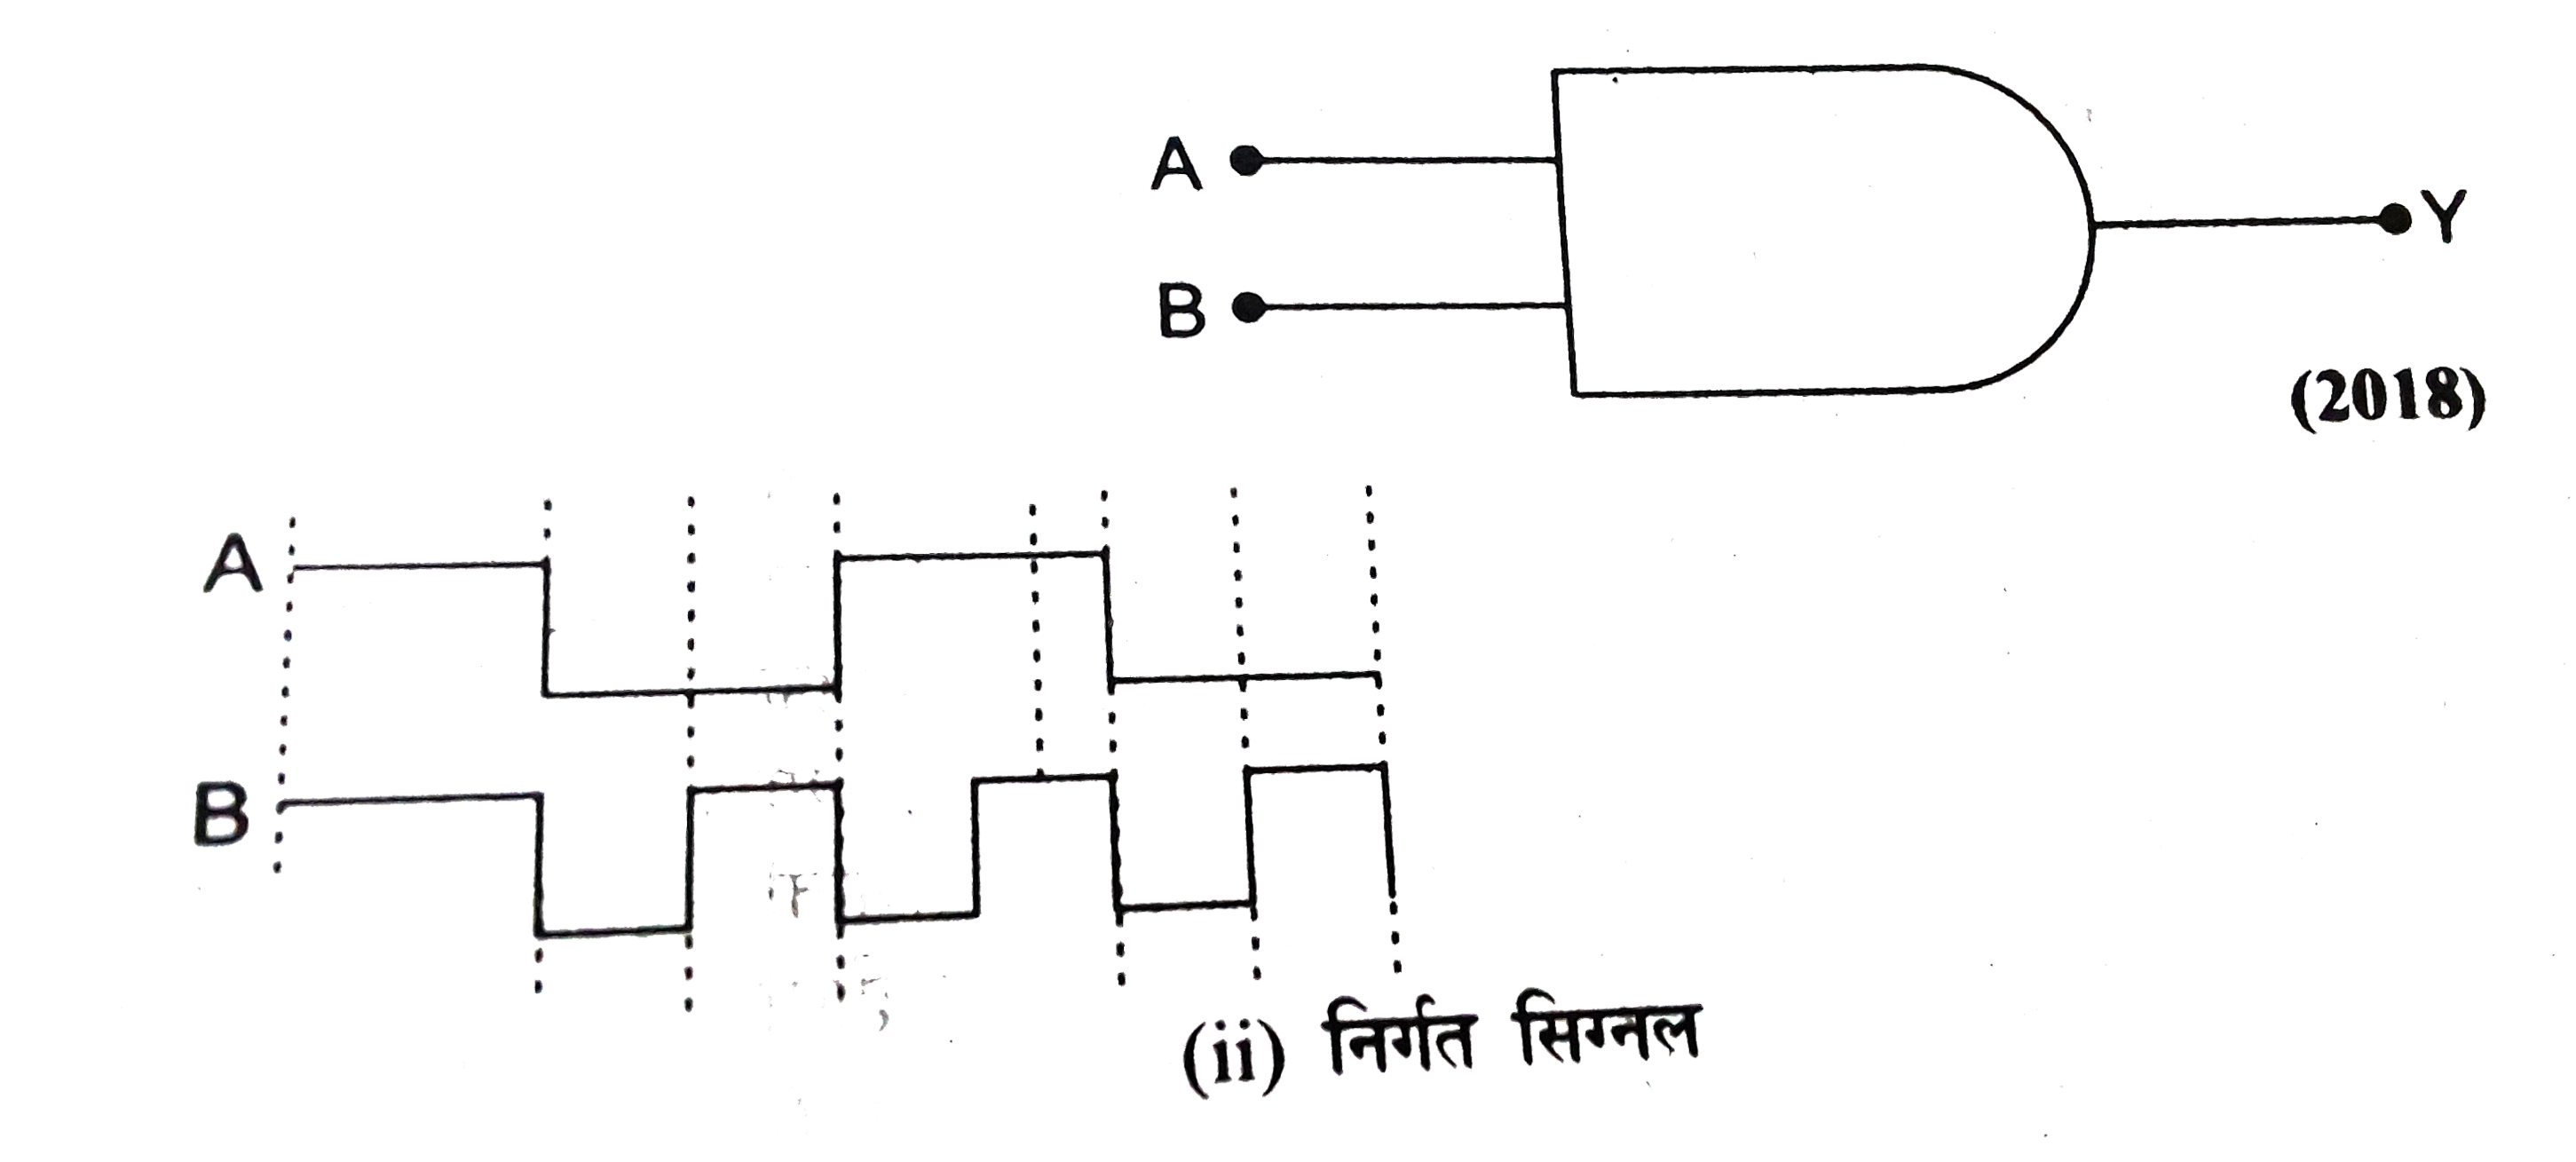 चित्र में एक लॉजिक गेट का संकेत चित्र दिया गया है ।   (i) लॉजिक गेट का नाम  तथा सत्यता सारणी लिखिए ।   (ii) A  वB को दिए गए निवेशी सिग्नलों का निर्गत सिग्नल प्रदर्शित कीजिये ।